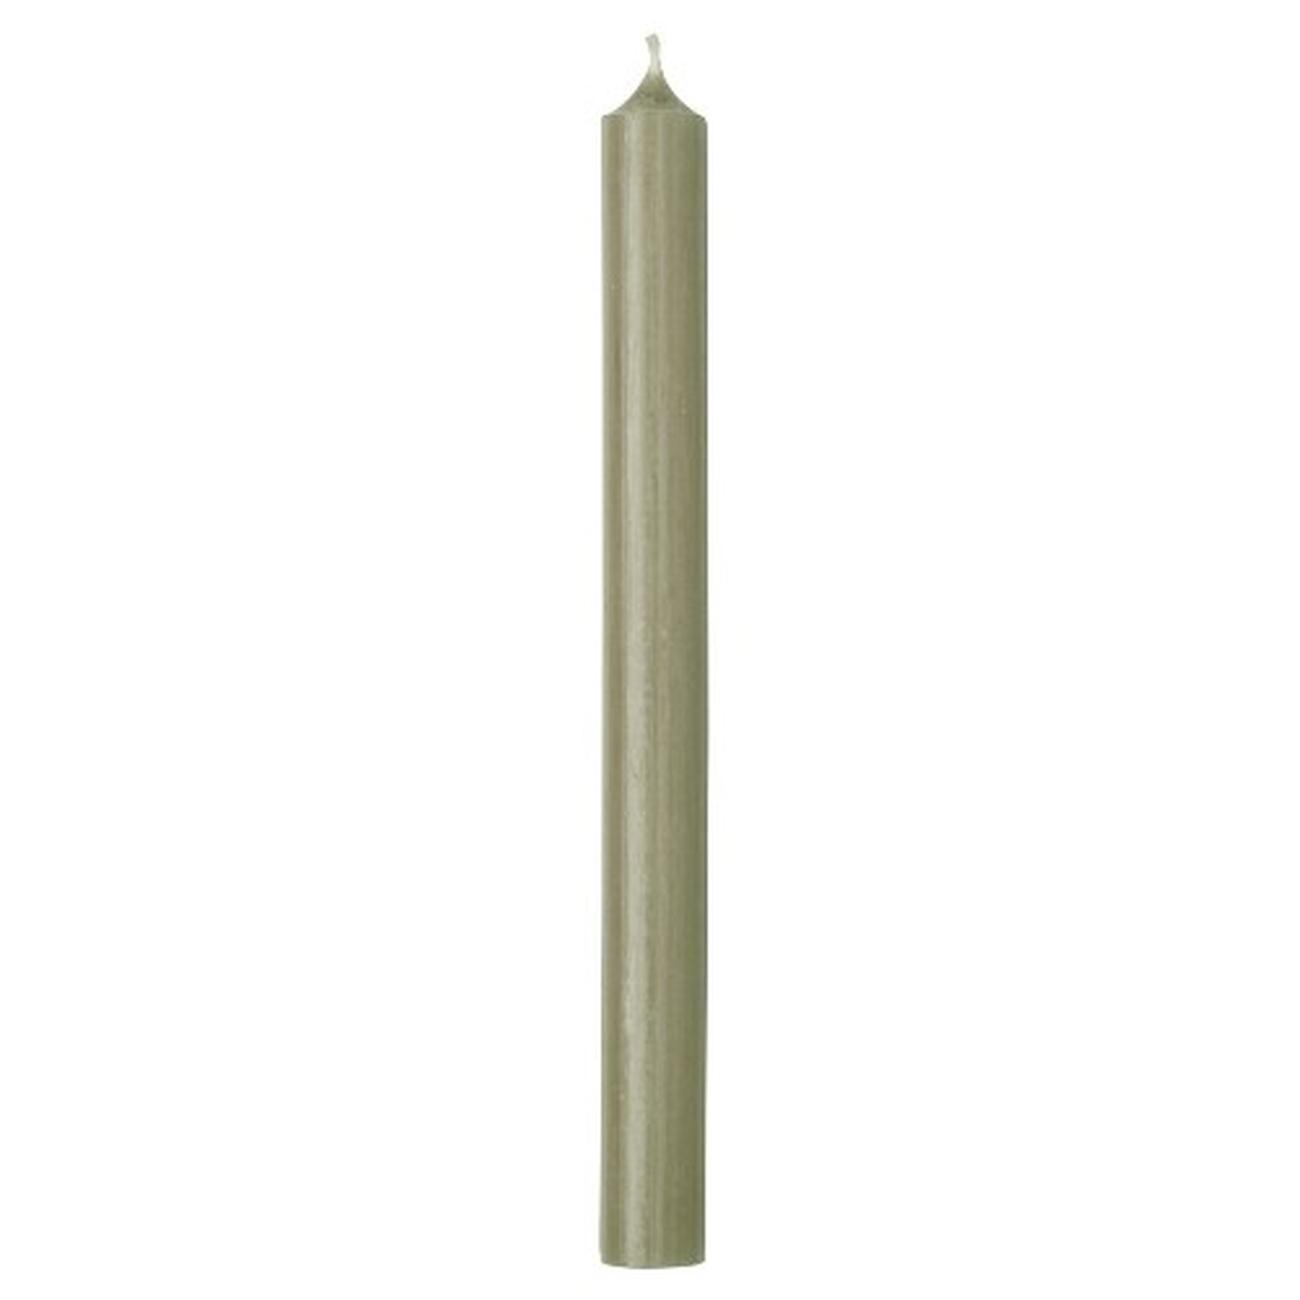 ihr-cylinder-candle-moss-green - IHR Cylinder Candle Vintage Green